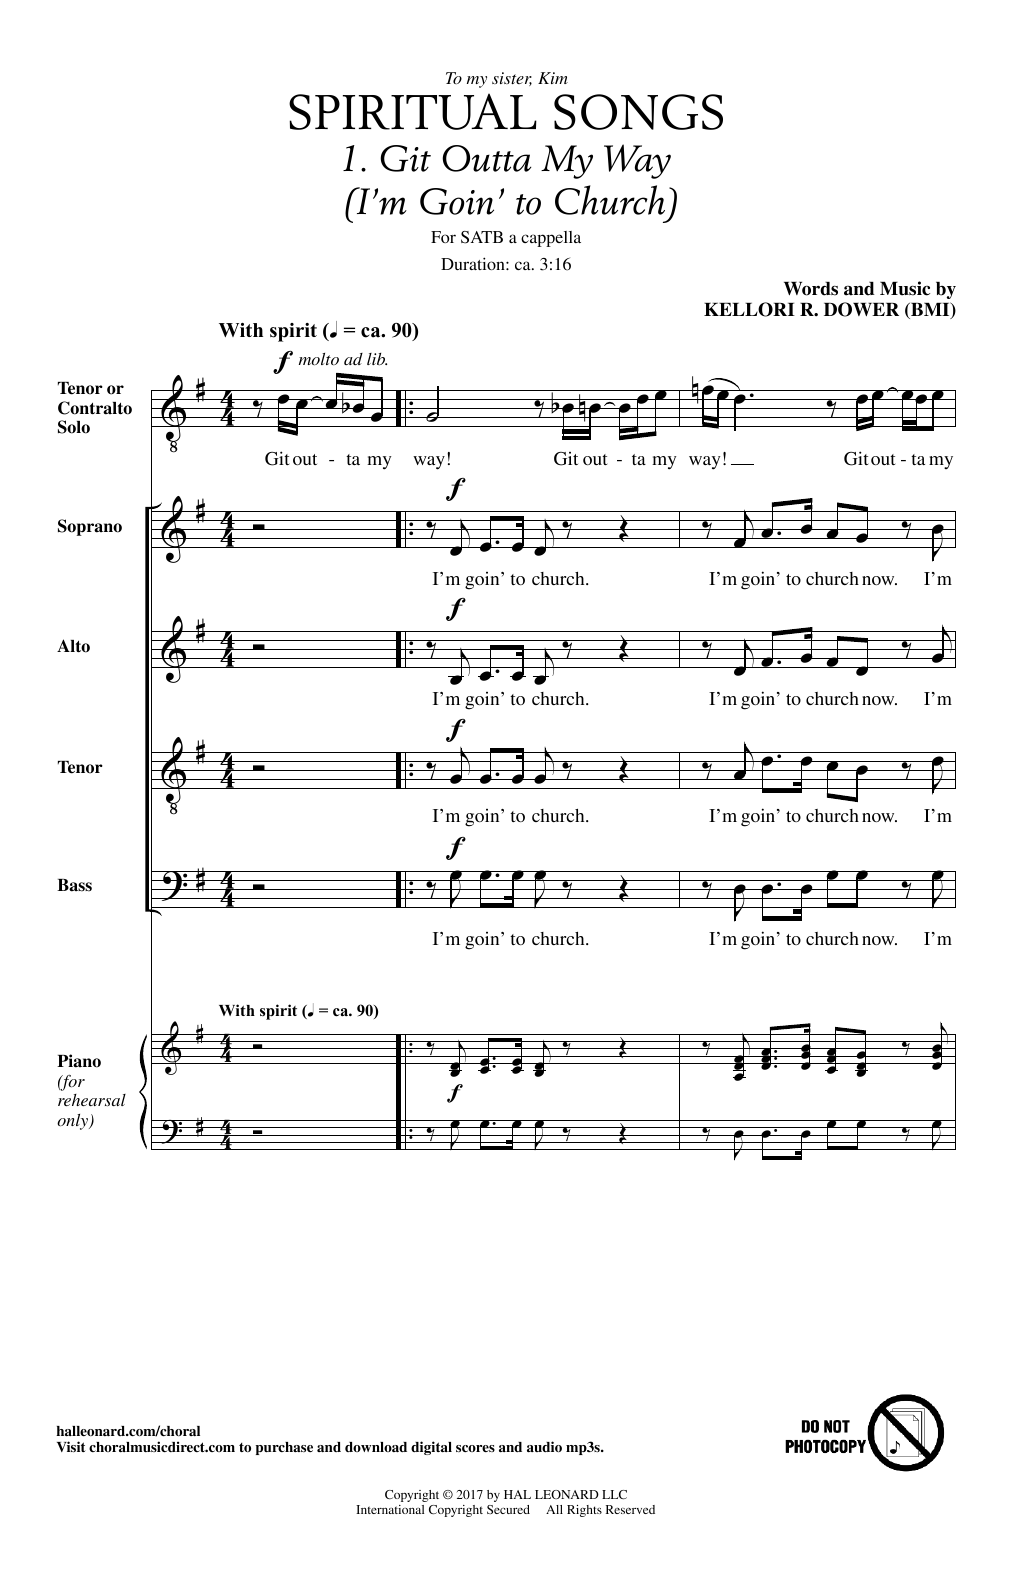 Kellori R. Dower Spiritual Songs sheet music notes and chords arranged for SATB Choir